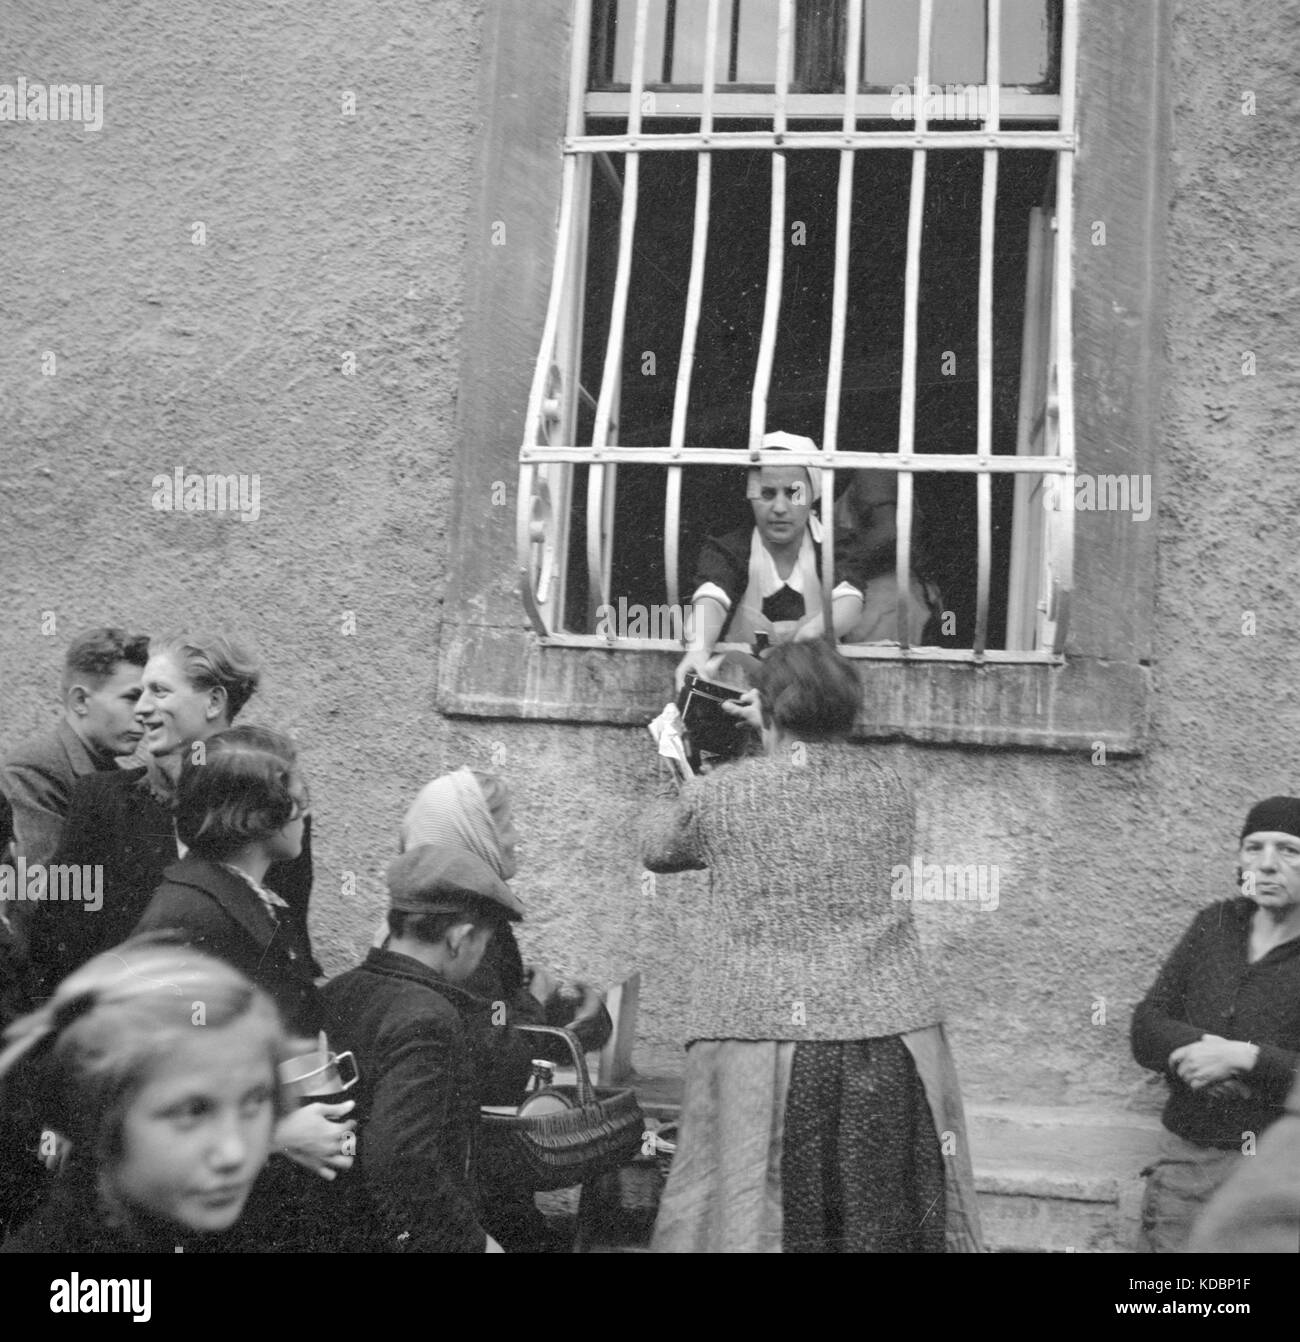 Oktober, 1938 in der Tschechoslowakei, evakuierte Bürger der Tschechischen Republik, die der deutschen Minderheit, bekannt als der udetenland" in Theresienstadt gezwungen wurden. Stockfoto